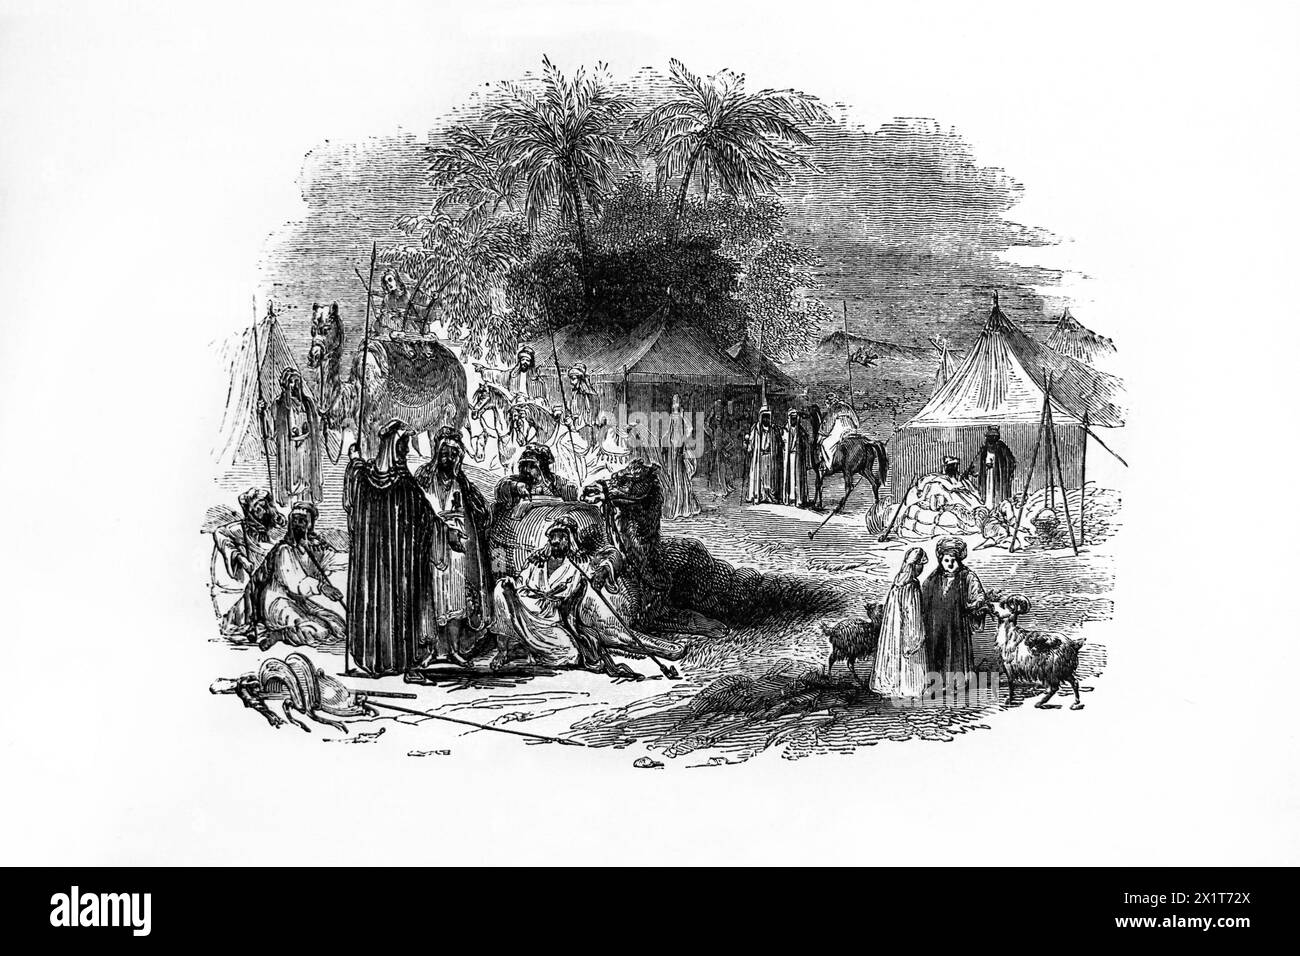 Gravure sur bois d'un campement bédouin dans la Bible familiale illustrée du XIXe siècle Banque D'Images